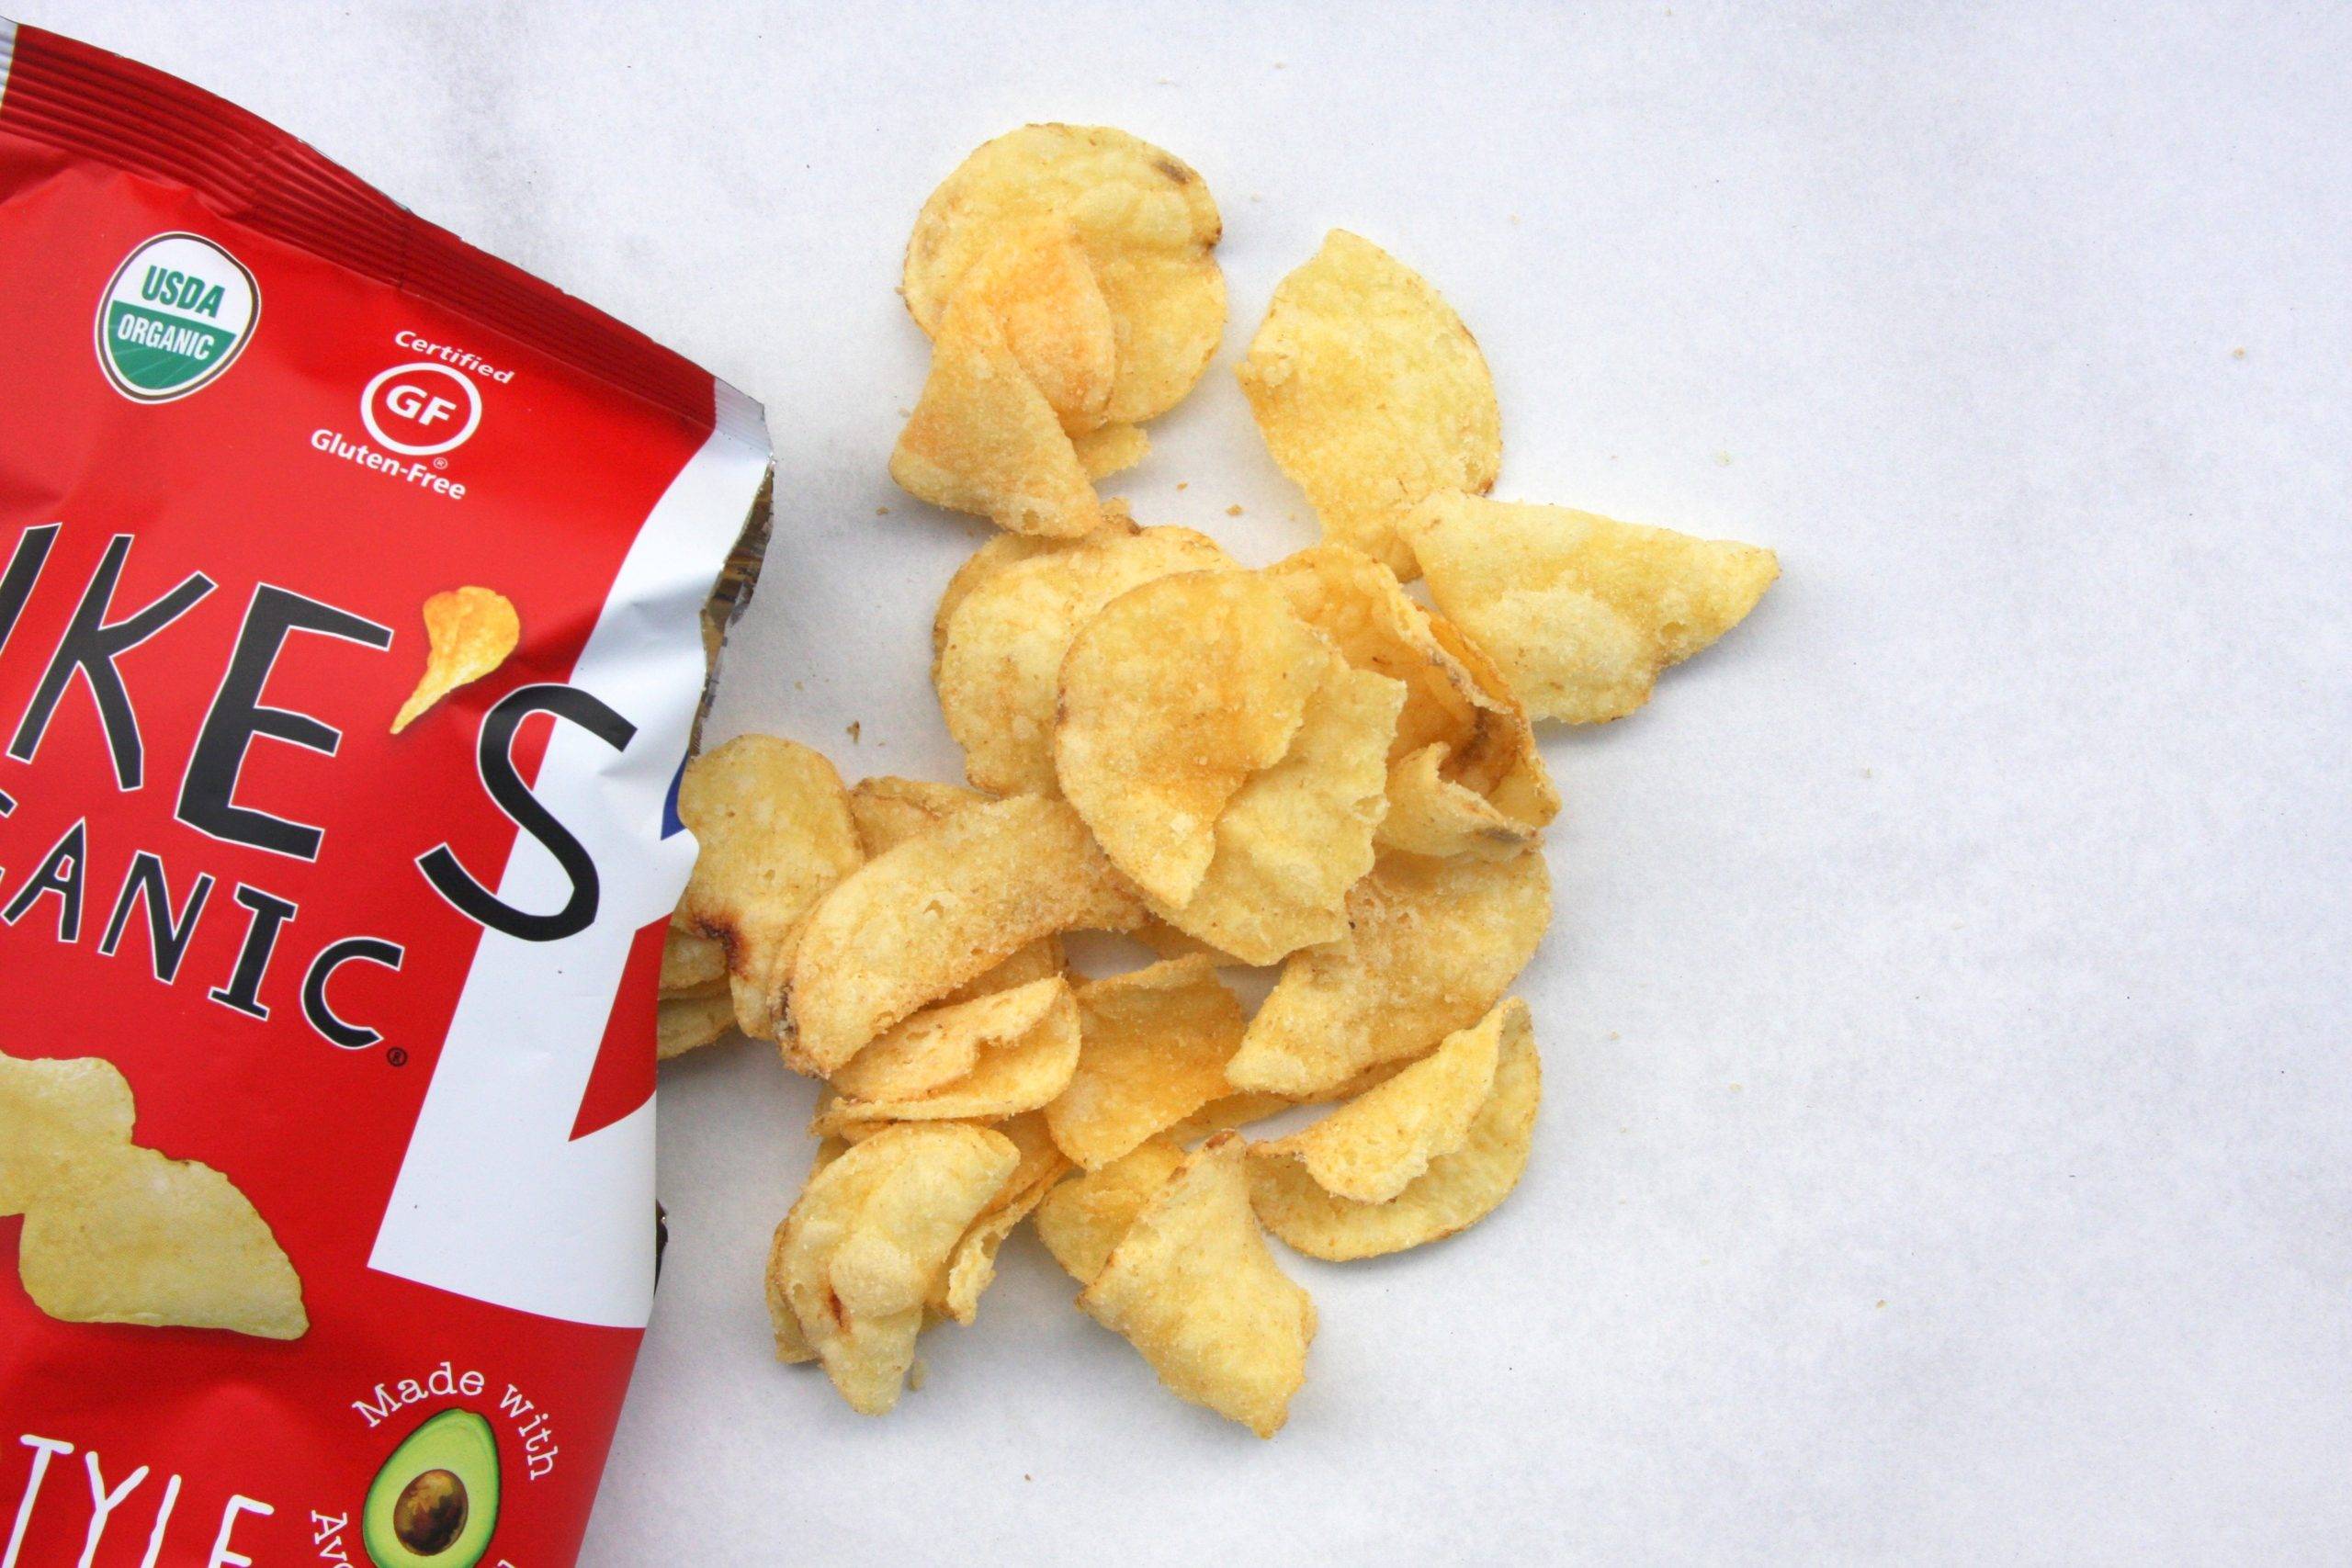 Lukes Organic Salt and Vinegar Chips scaled - Dopo lo zucchero zero, vogliono liberarsi del gusto pesante che rende i cinesi “addictive”